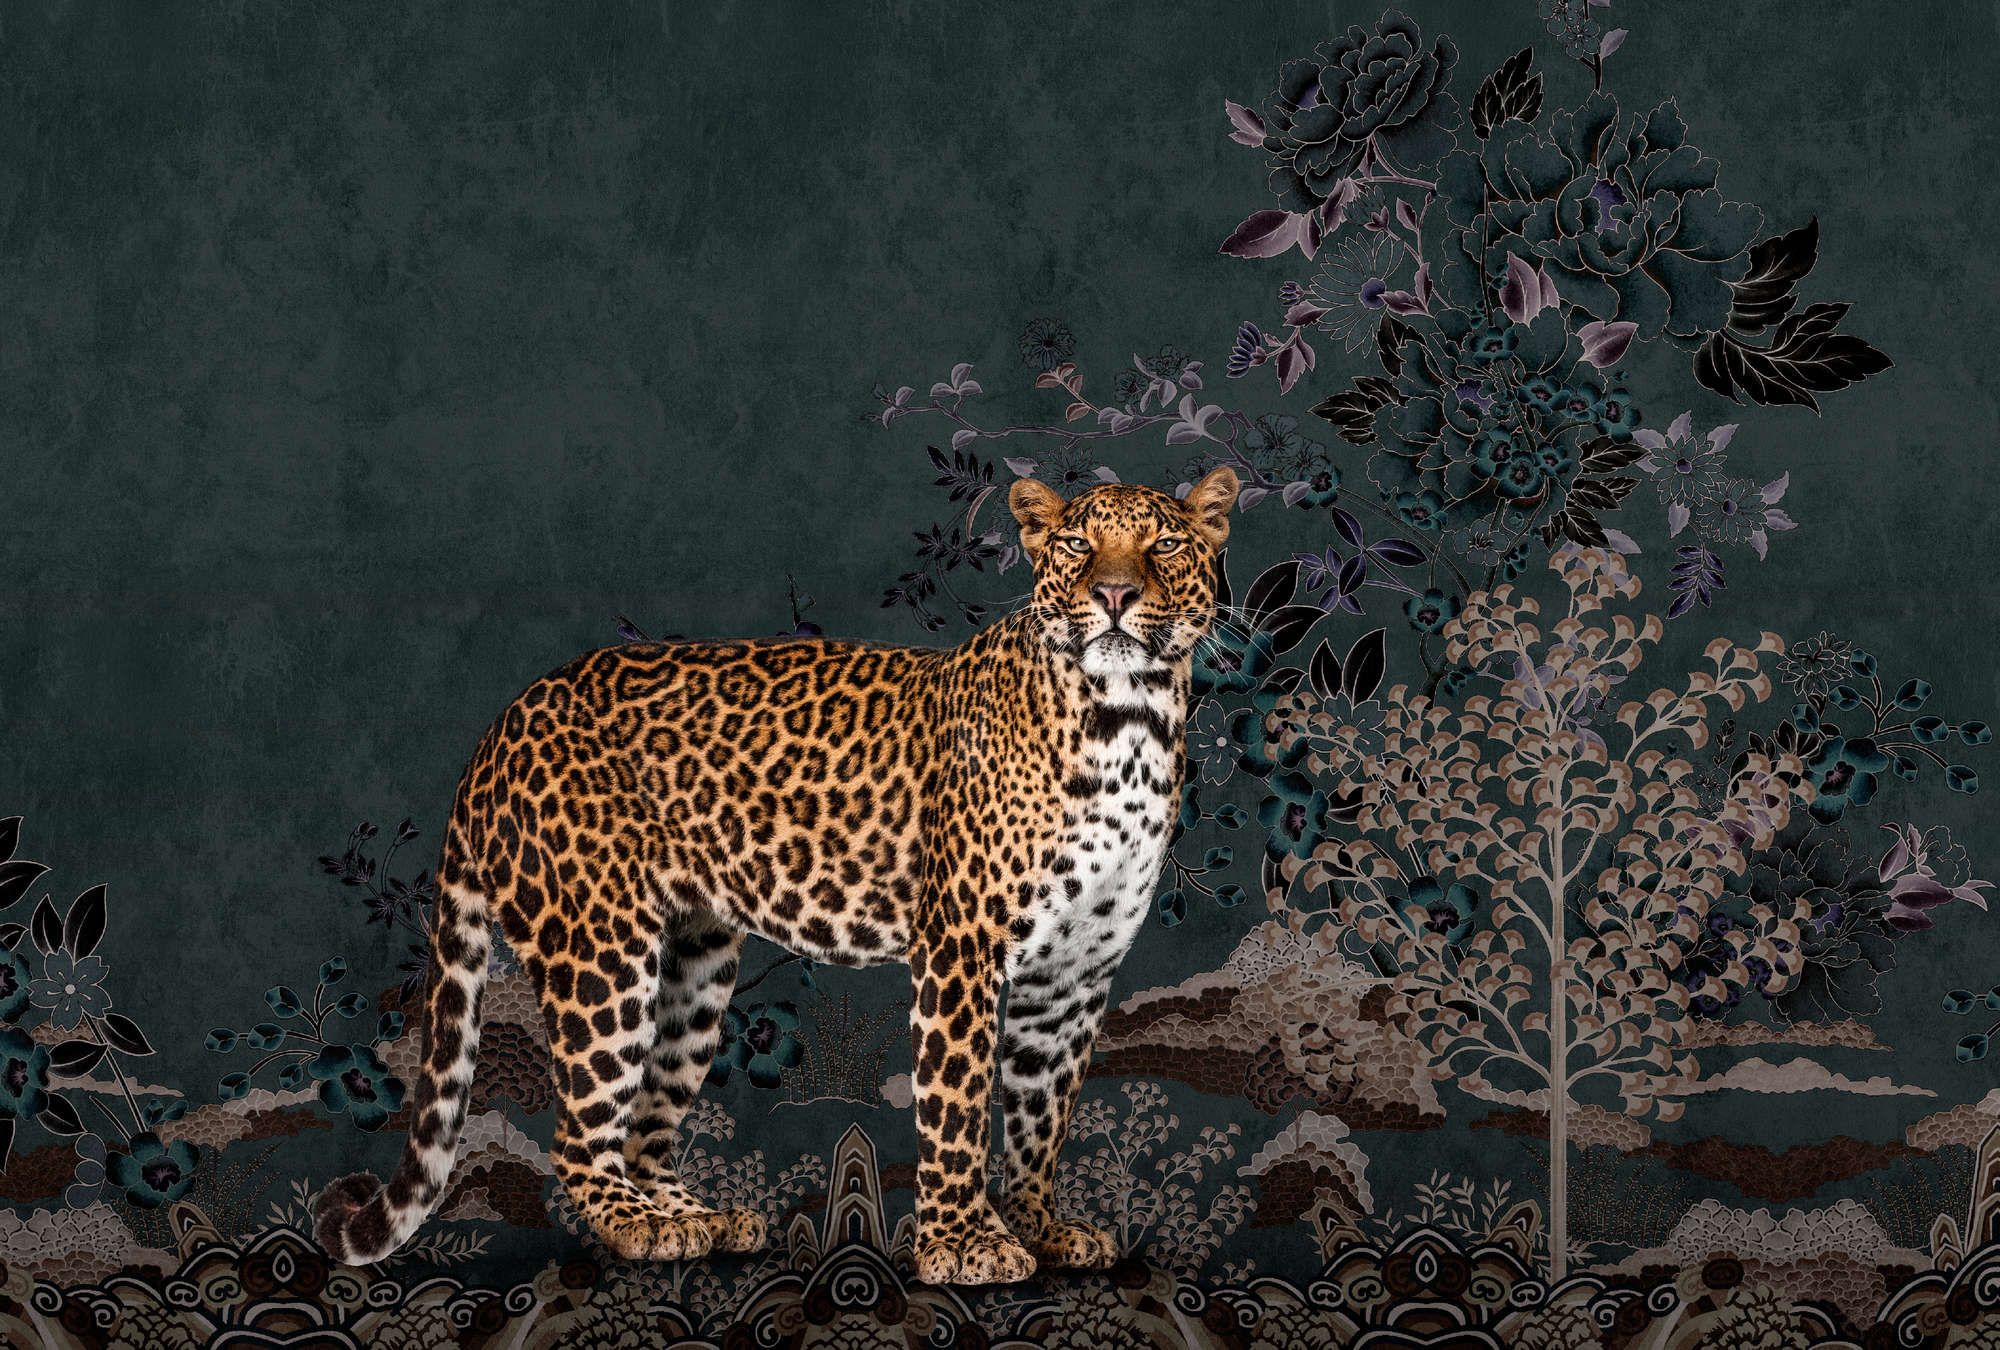             papier peint en papier panoramique »rani« - motif jungle abstrait avec léopard - intissé légèrement structuré
        